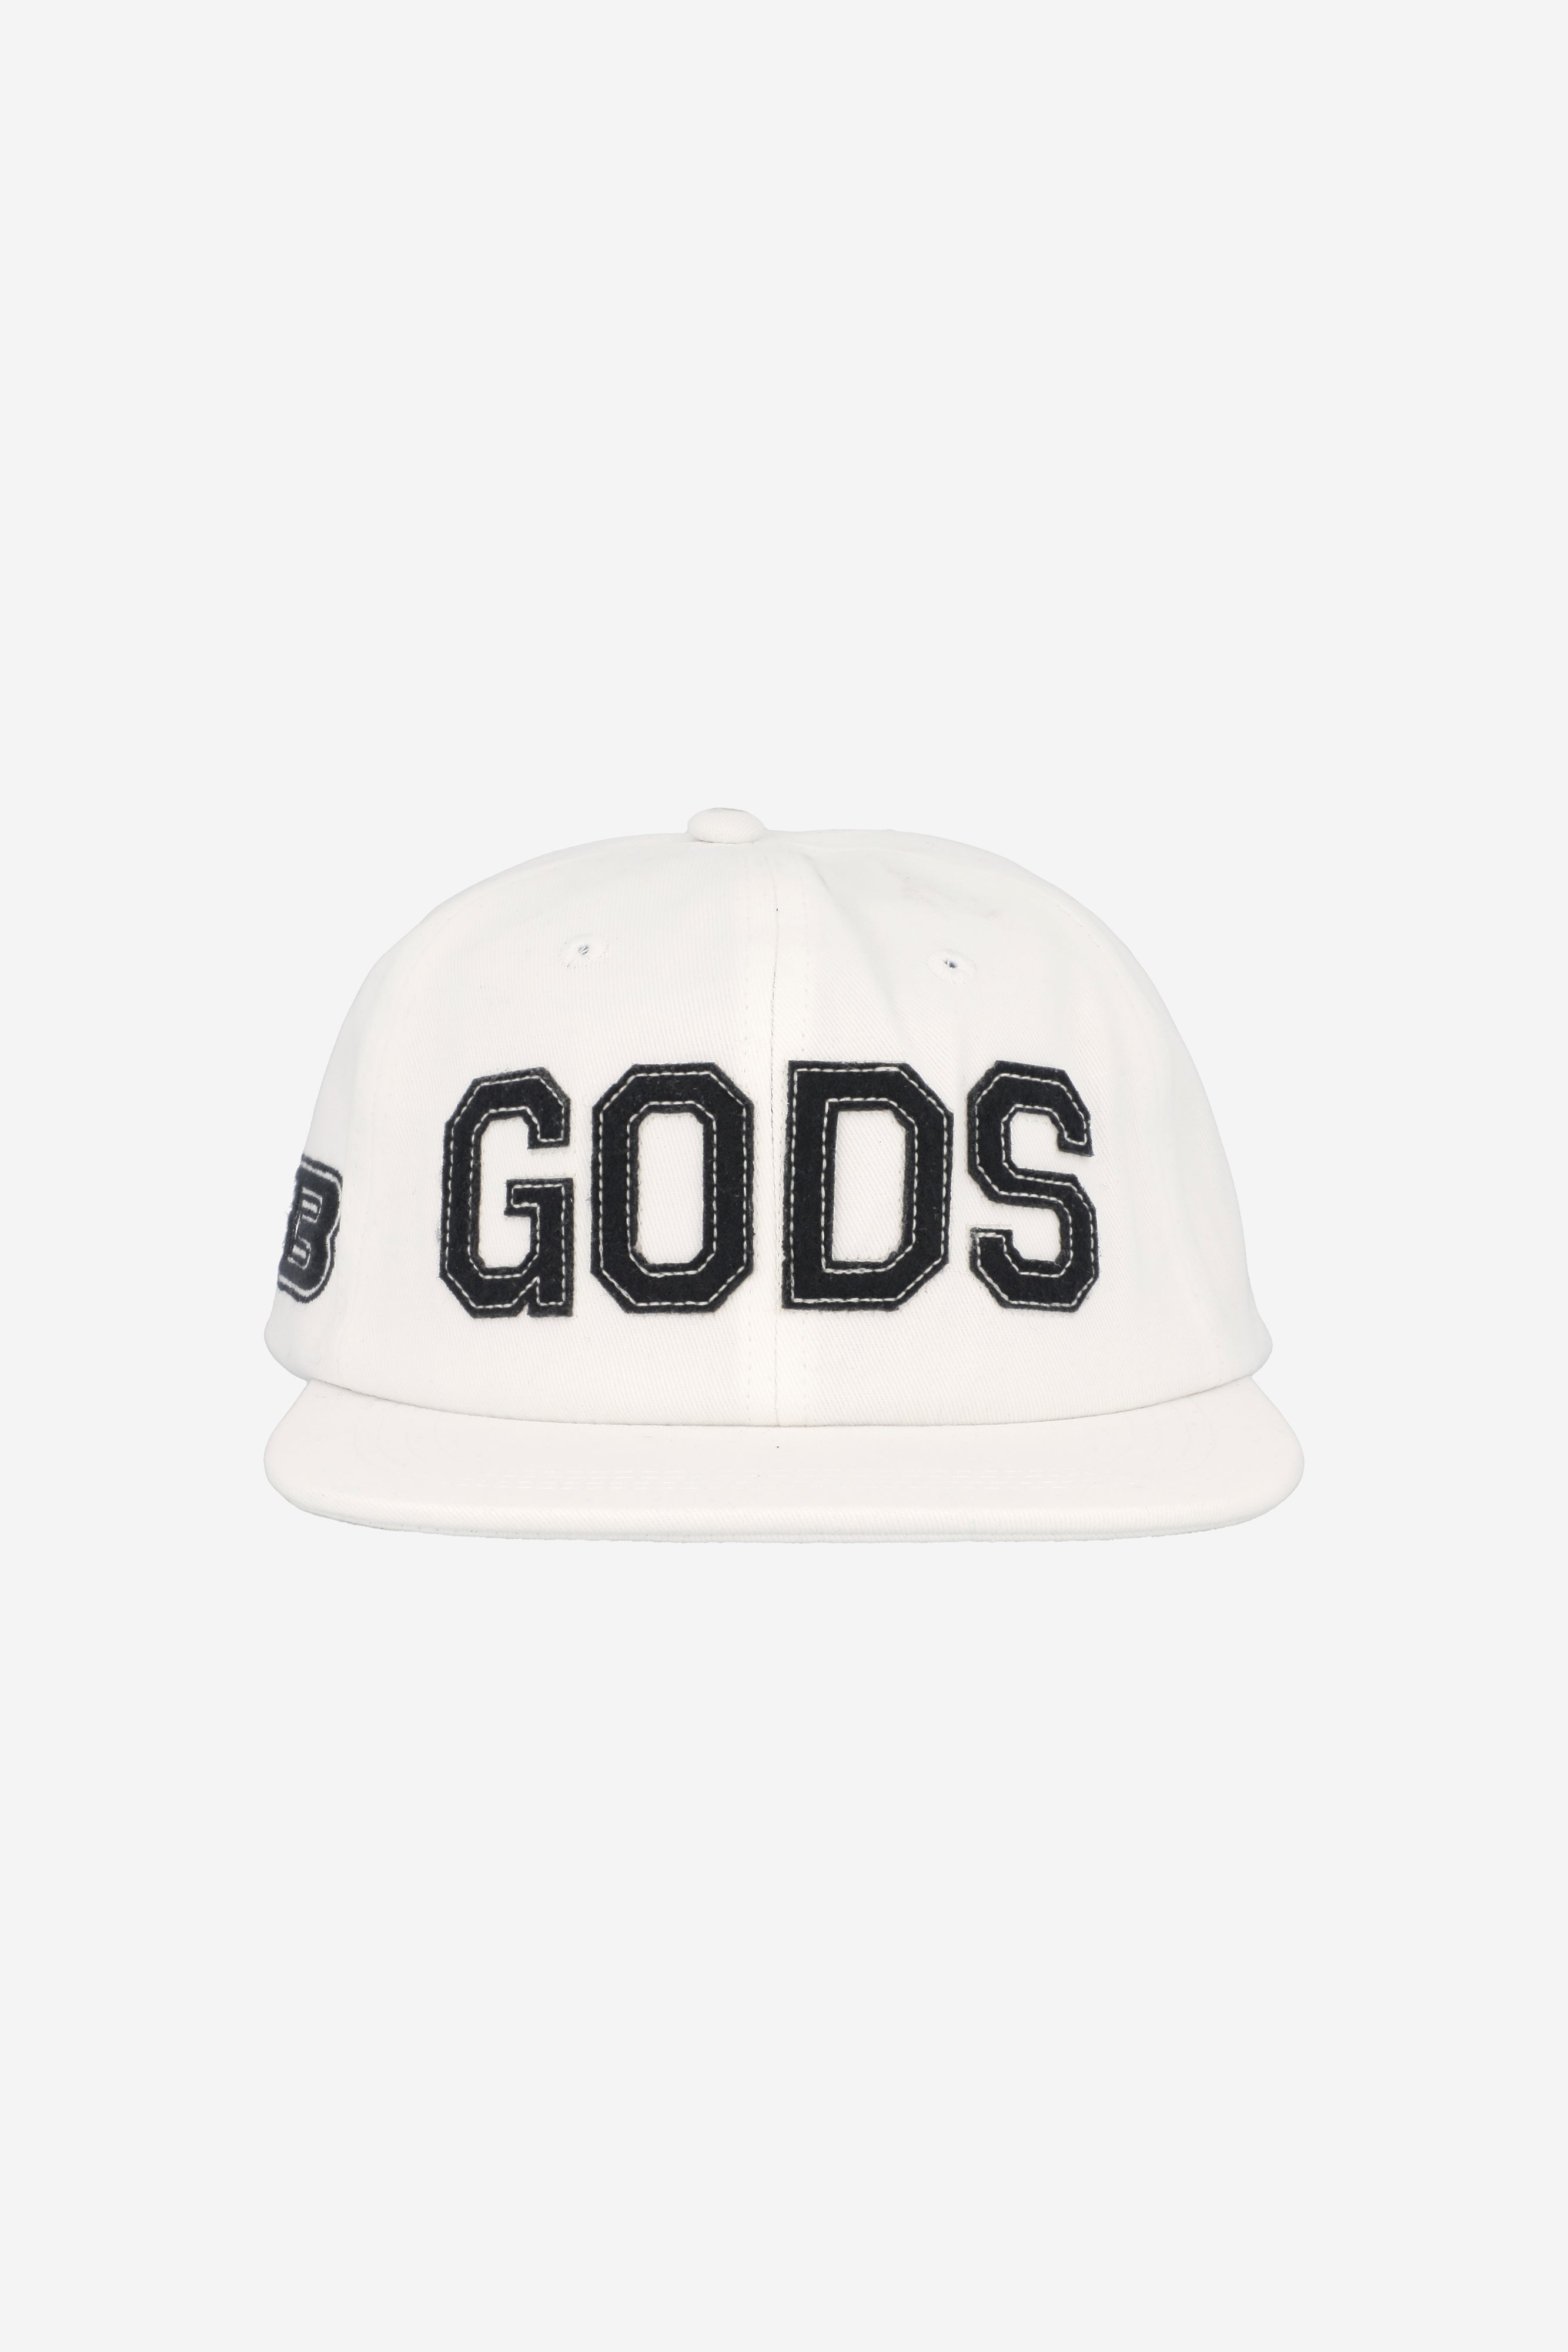 GODS CAP WHITE